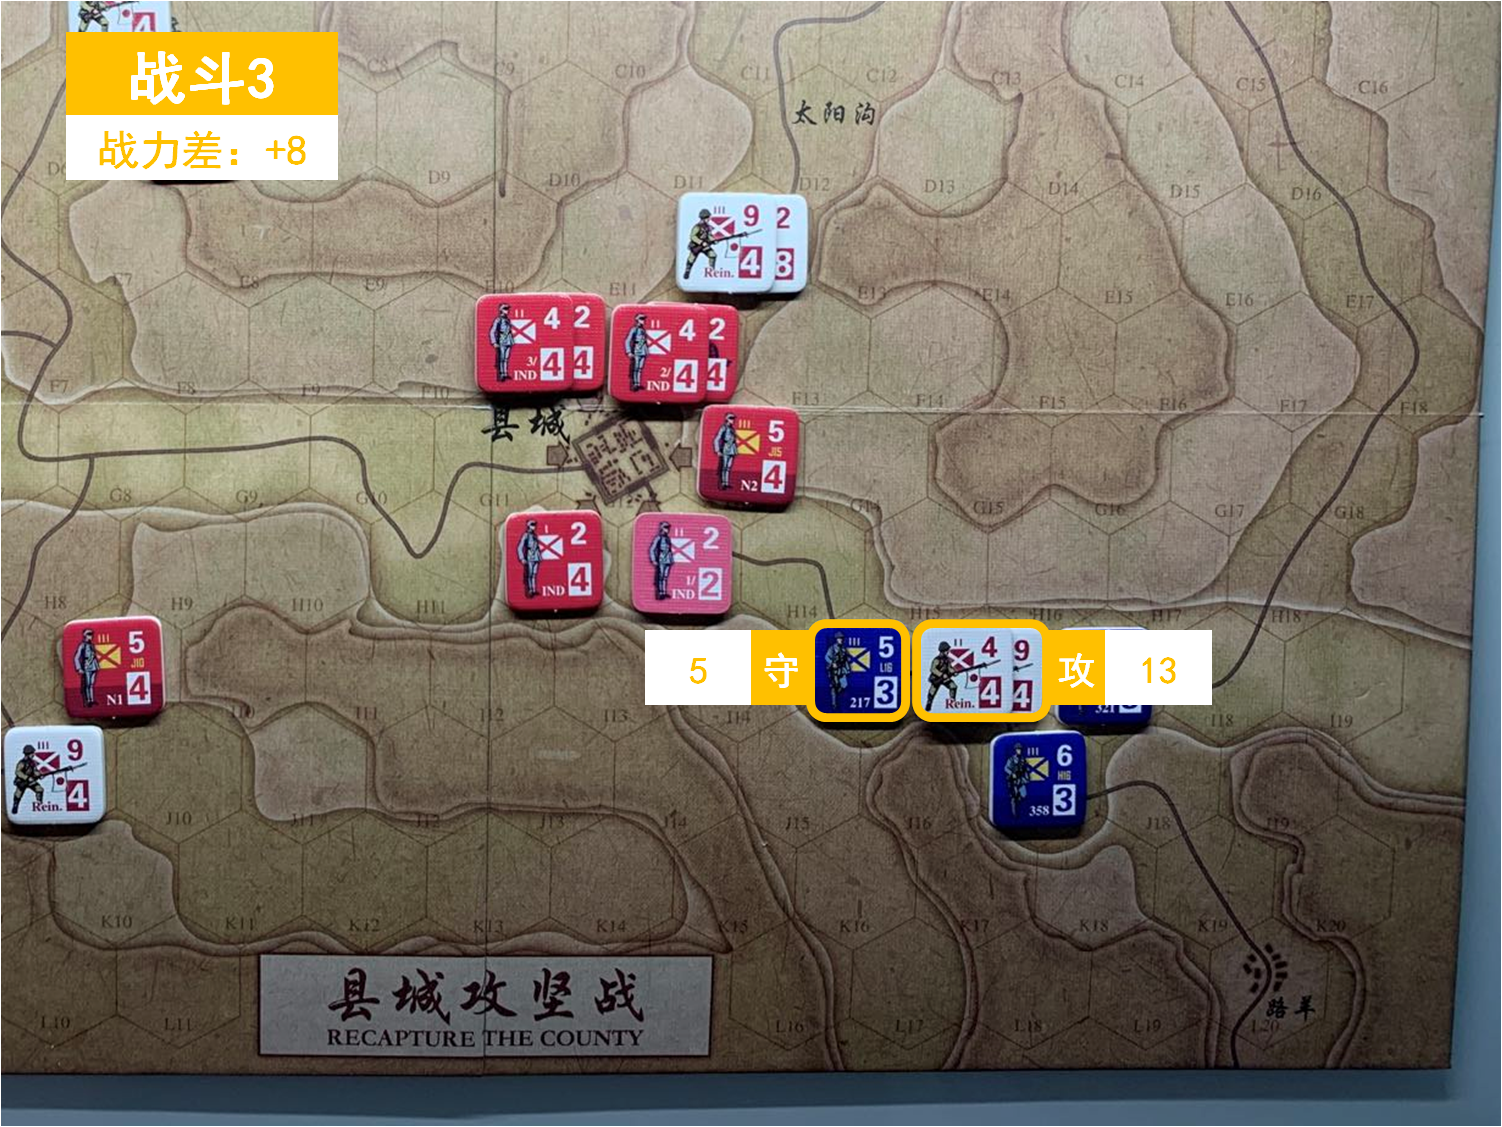 第四回合 日方战斗阶段 战斗3 战斗力差值